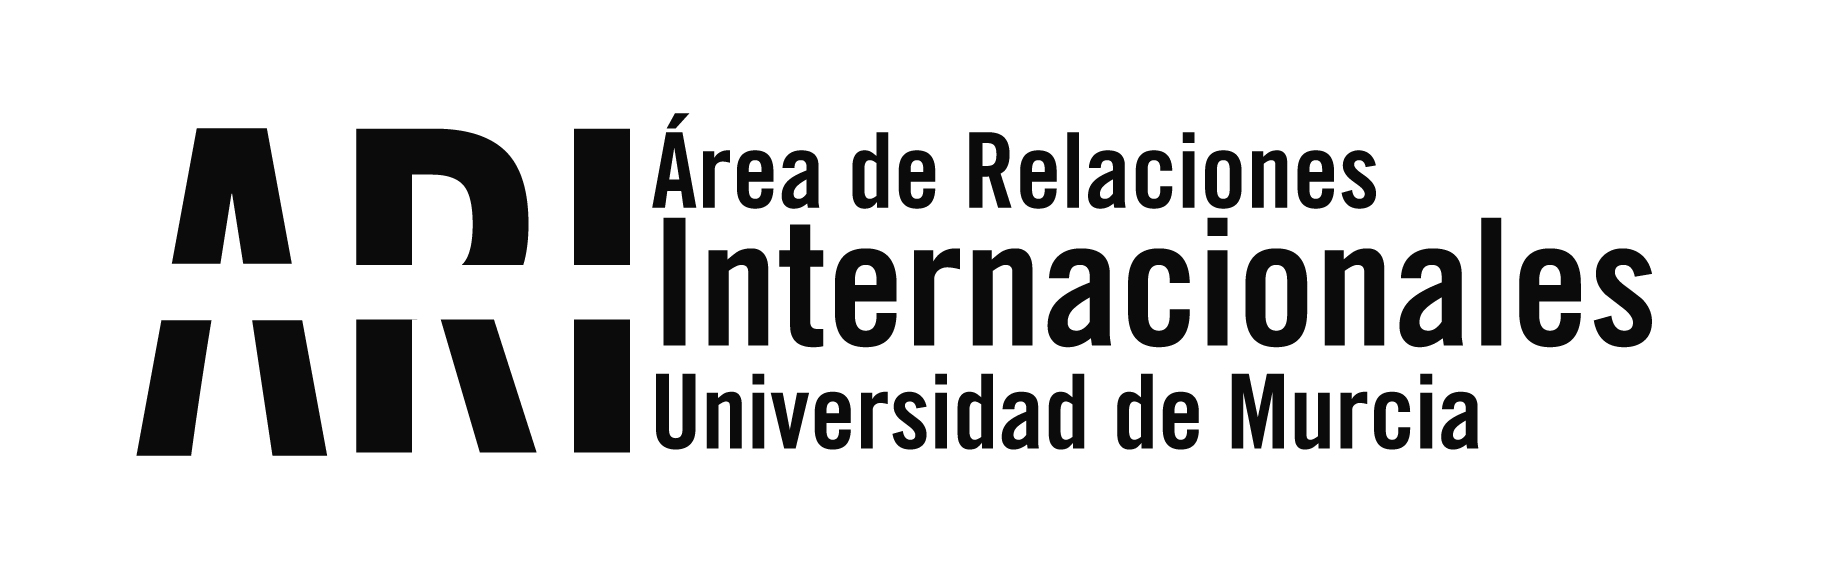 Asistencia a las Jornadas de Movilidad Erasmus en Madrid - Área de Relaciones Internacionales